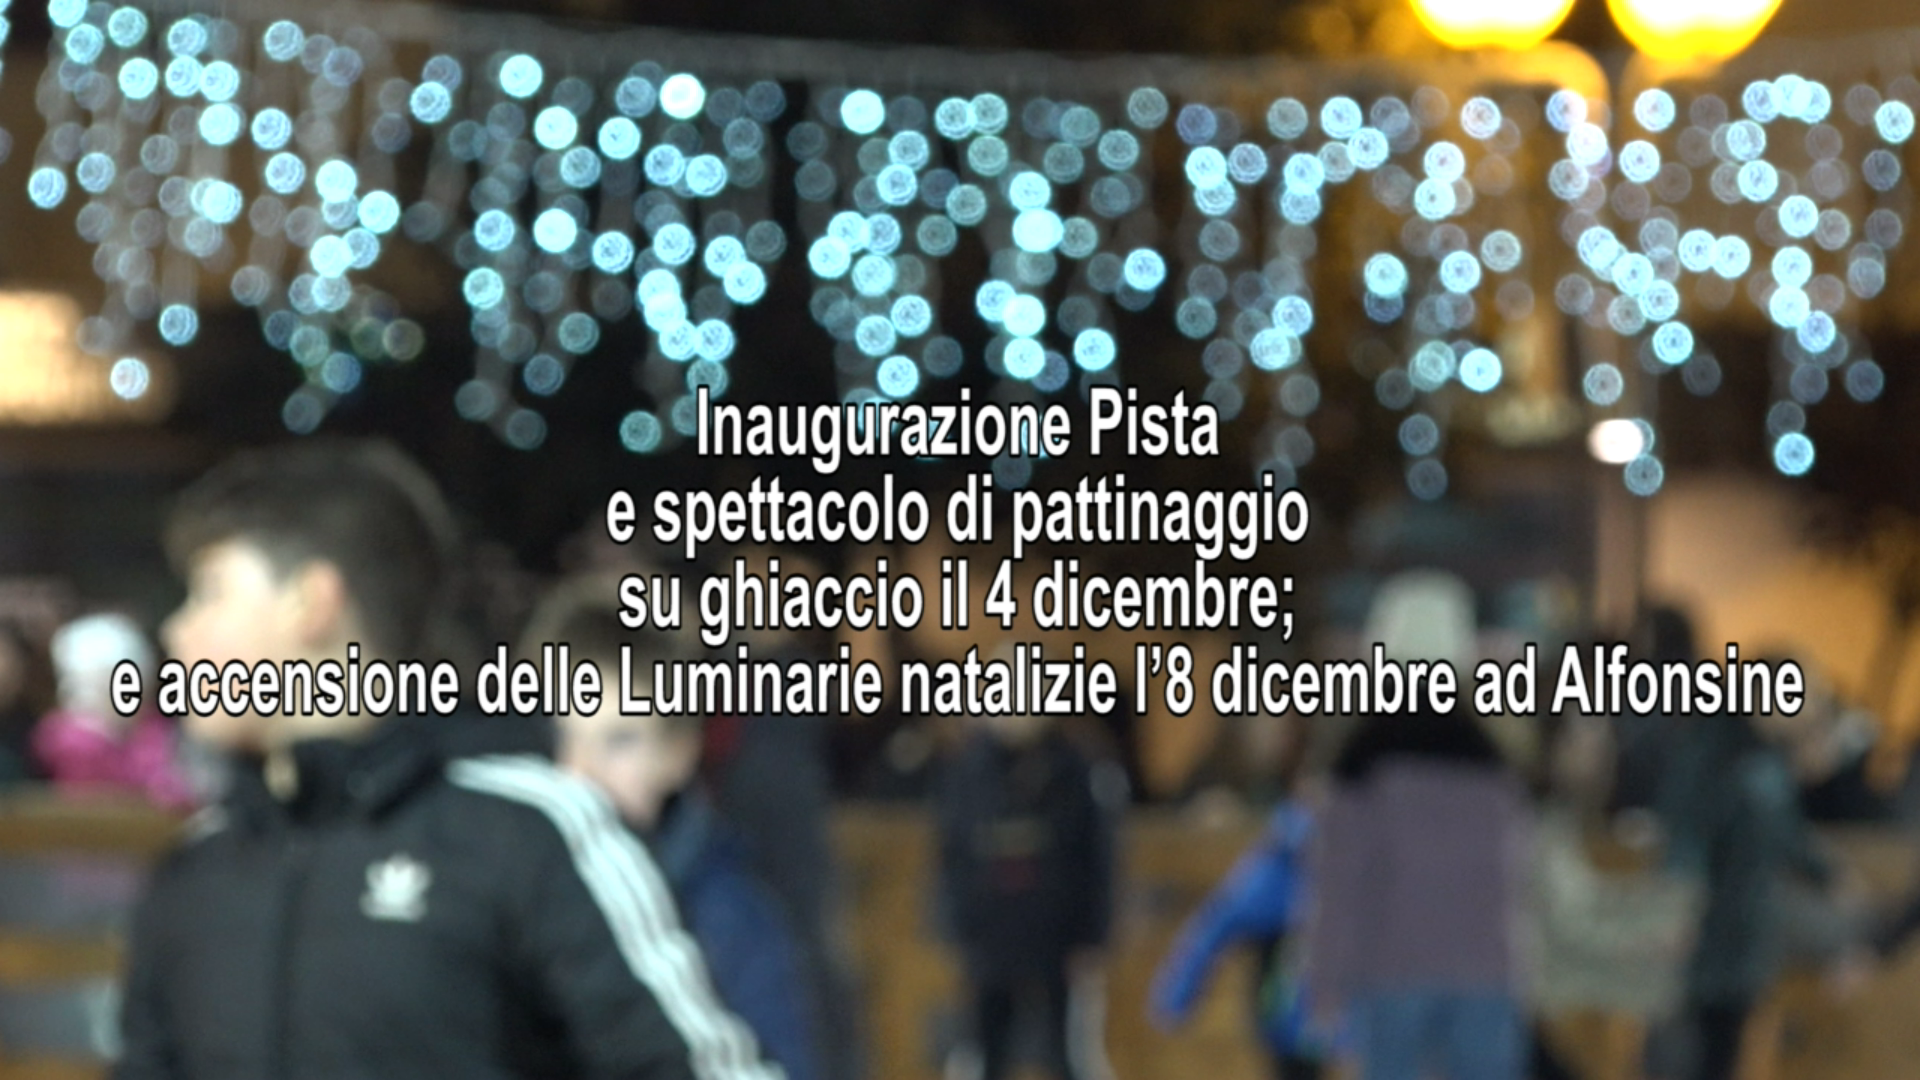 Natale ad Alfonsine 2022: Inaugurazione Pista e Spettacolo di Pattinaggio ed accensione delle luminarie natalizie